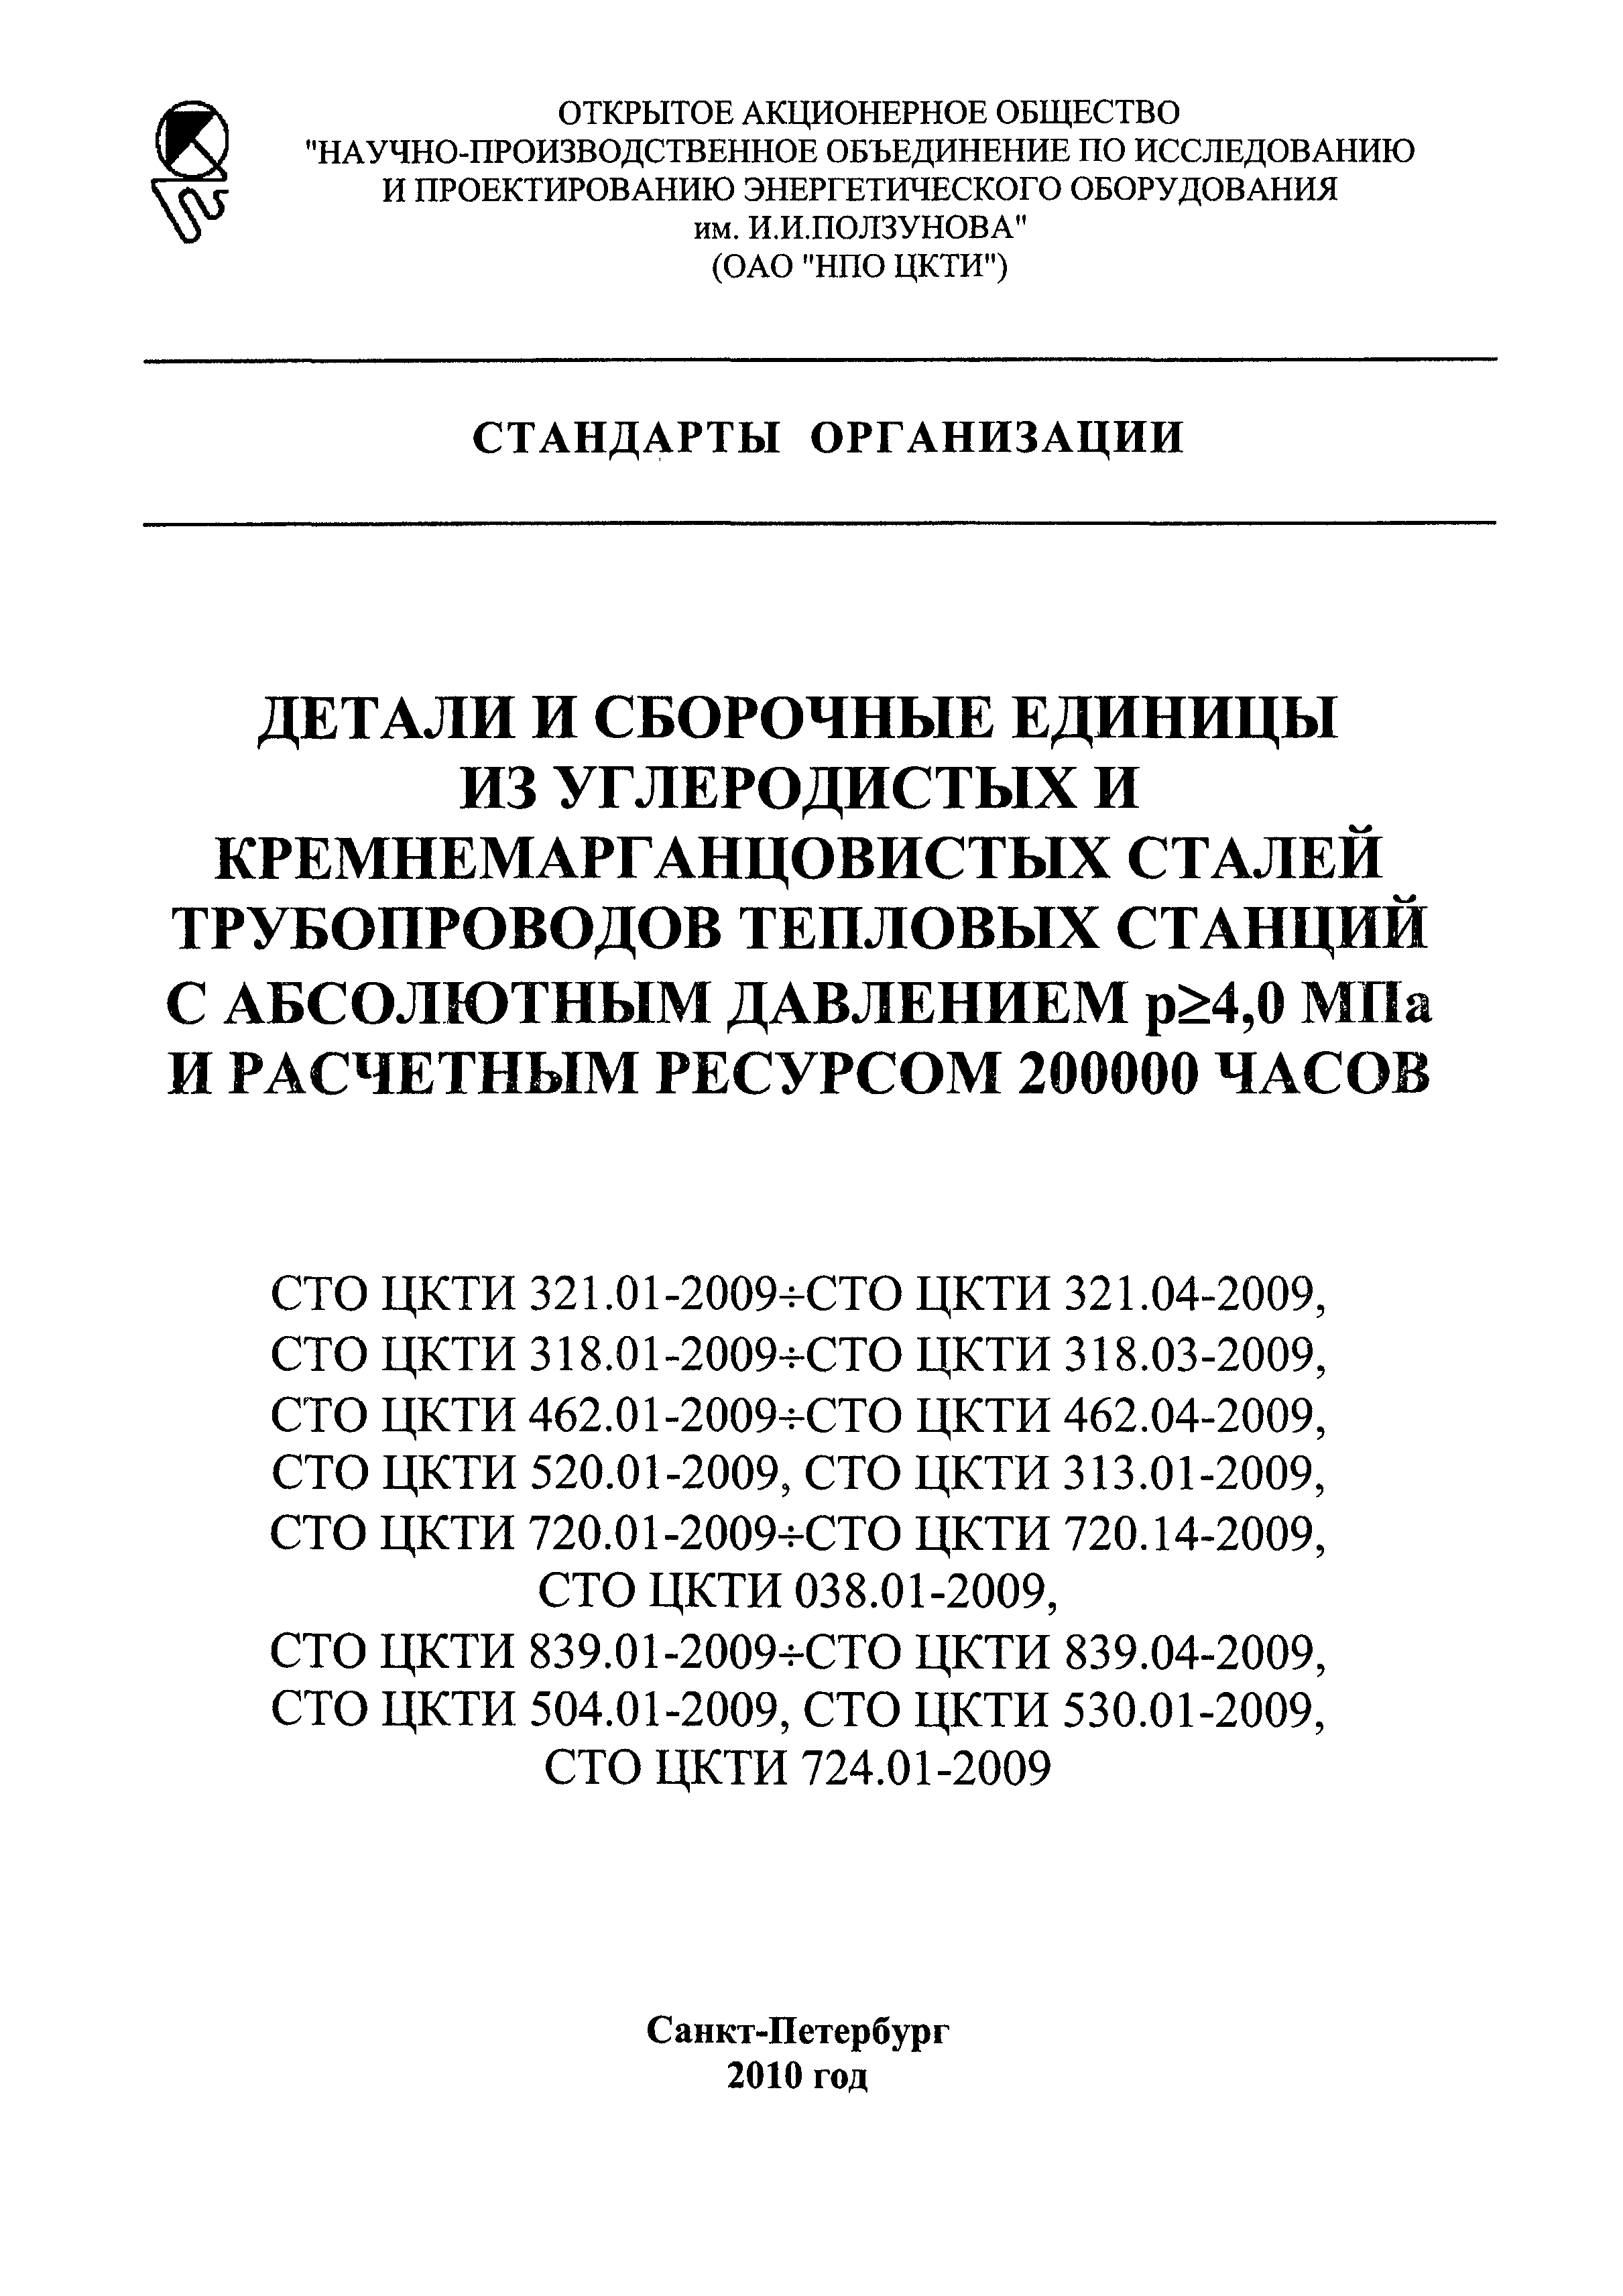 СТО ЦКТИ 839.02-2009